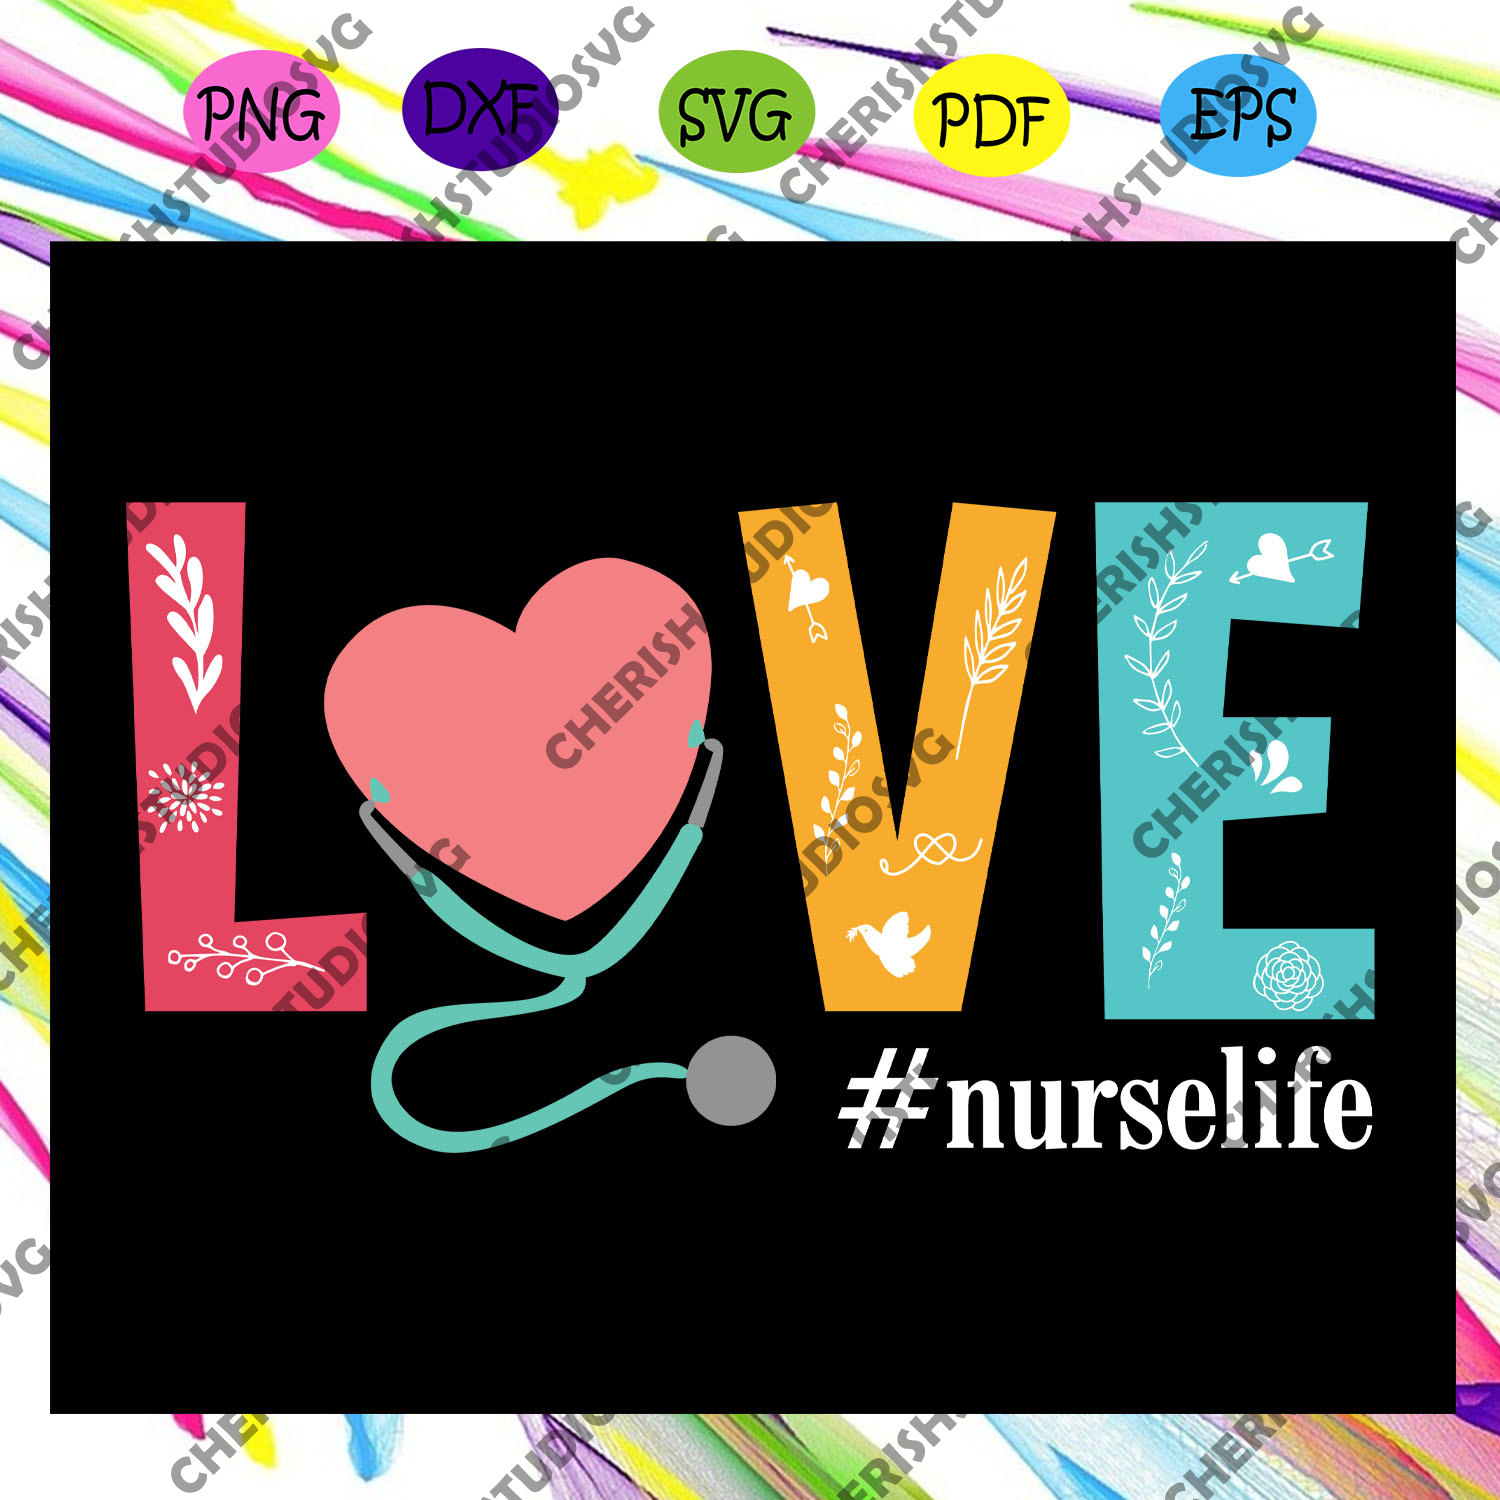 Download Love Nurse Life Nurse Svg Nurse Nurse Gift Nurse Life Nurse Clipa Cherishsvgstudio